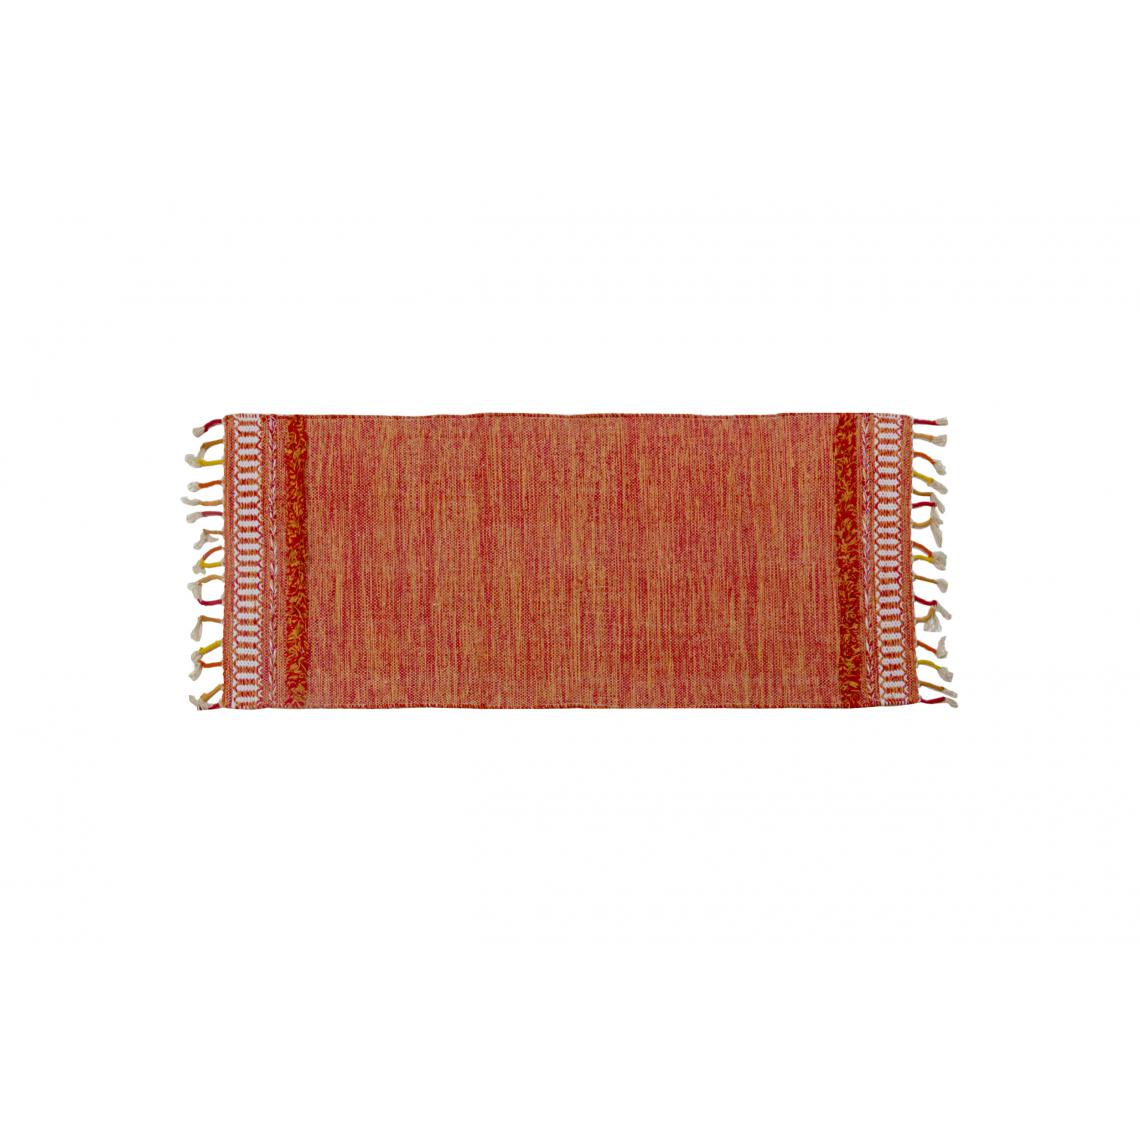 Alter - Tapis boston moderne, style kilim, 100% coton, orange, 180x60cm - Tapis